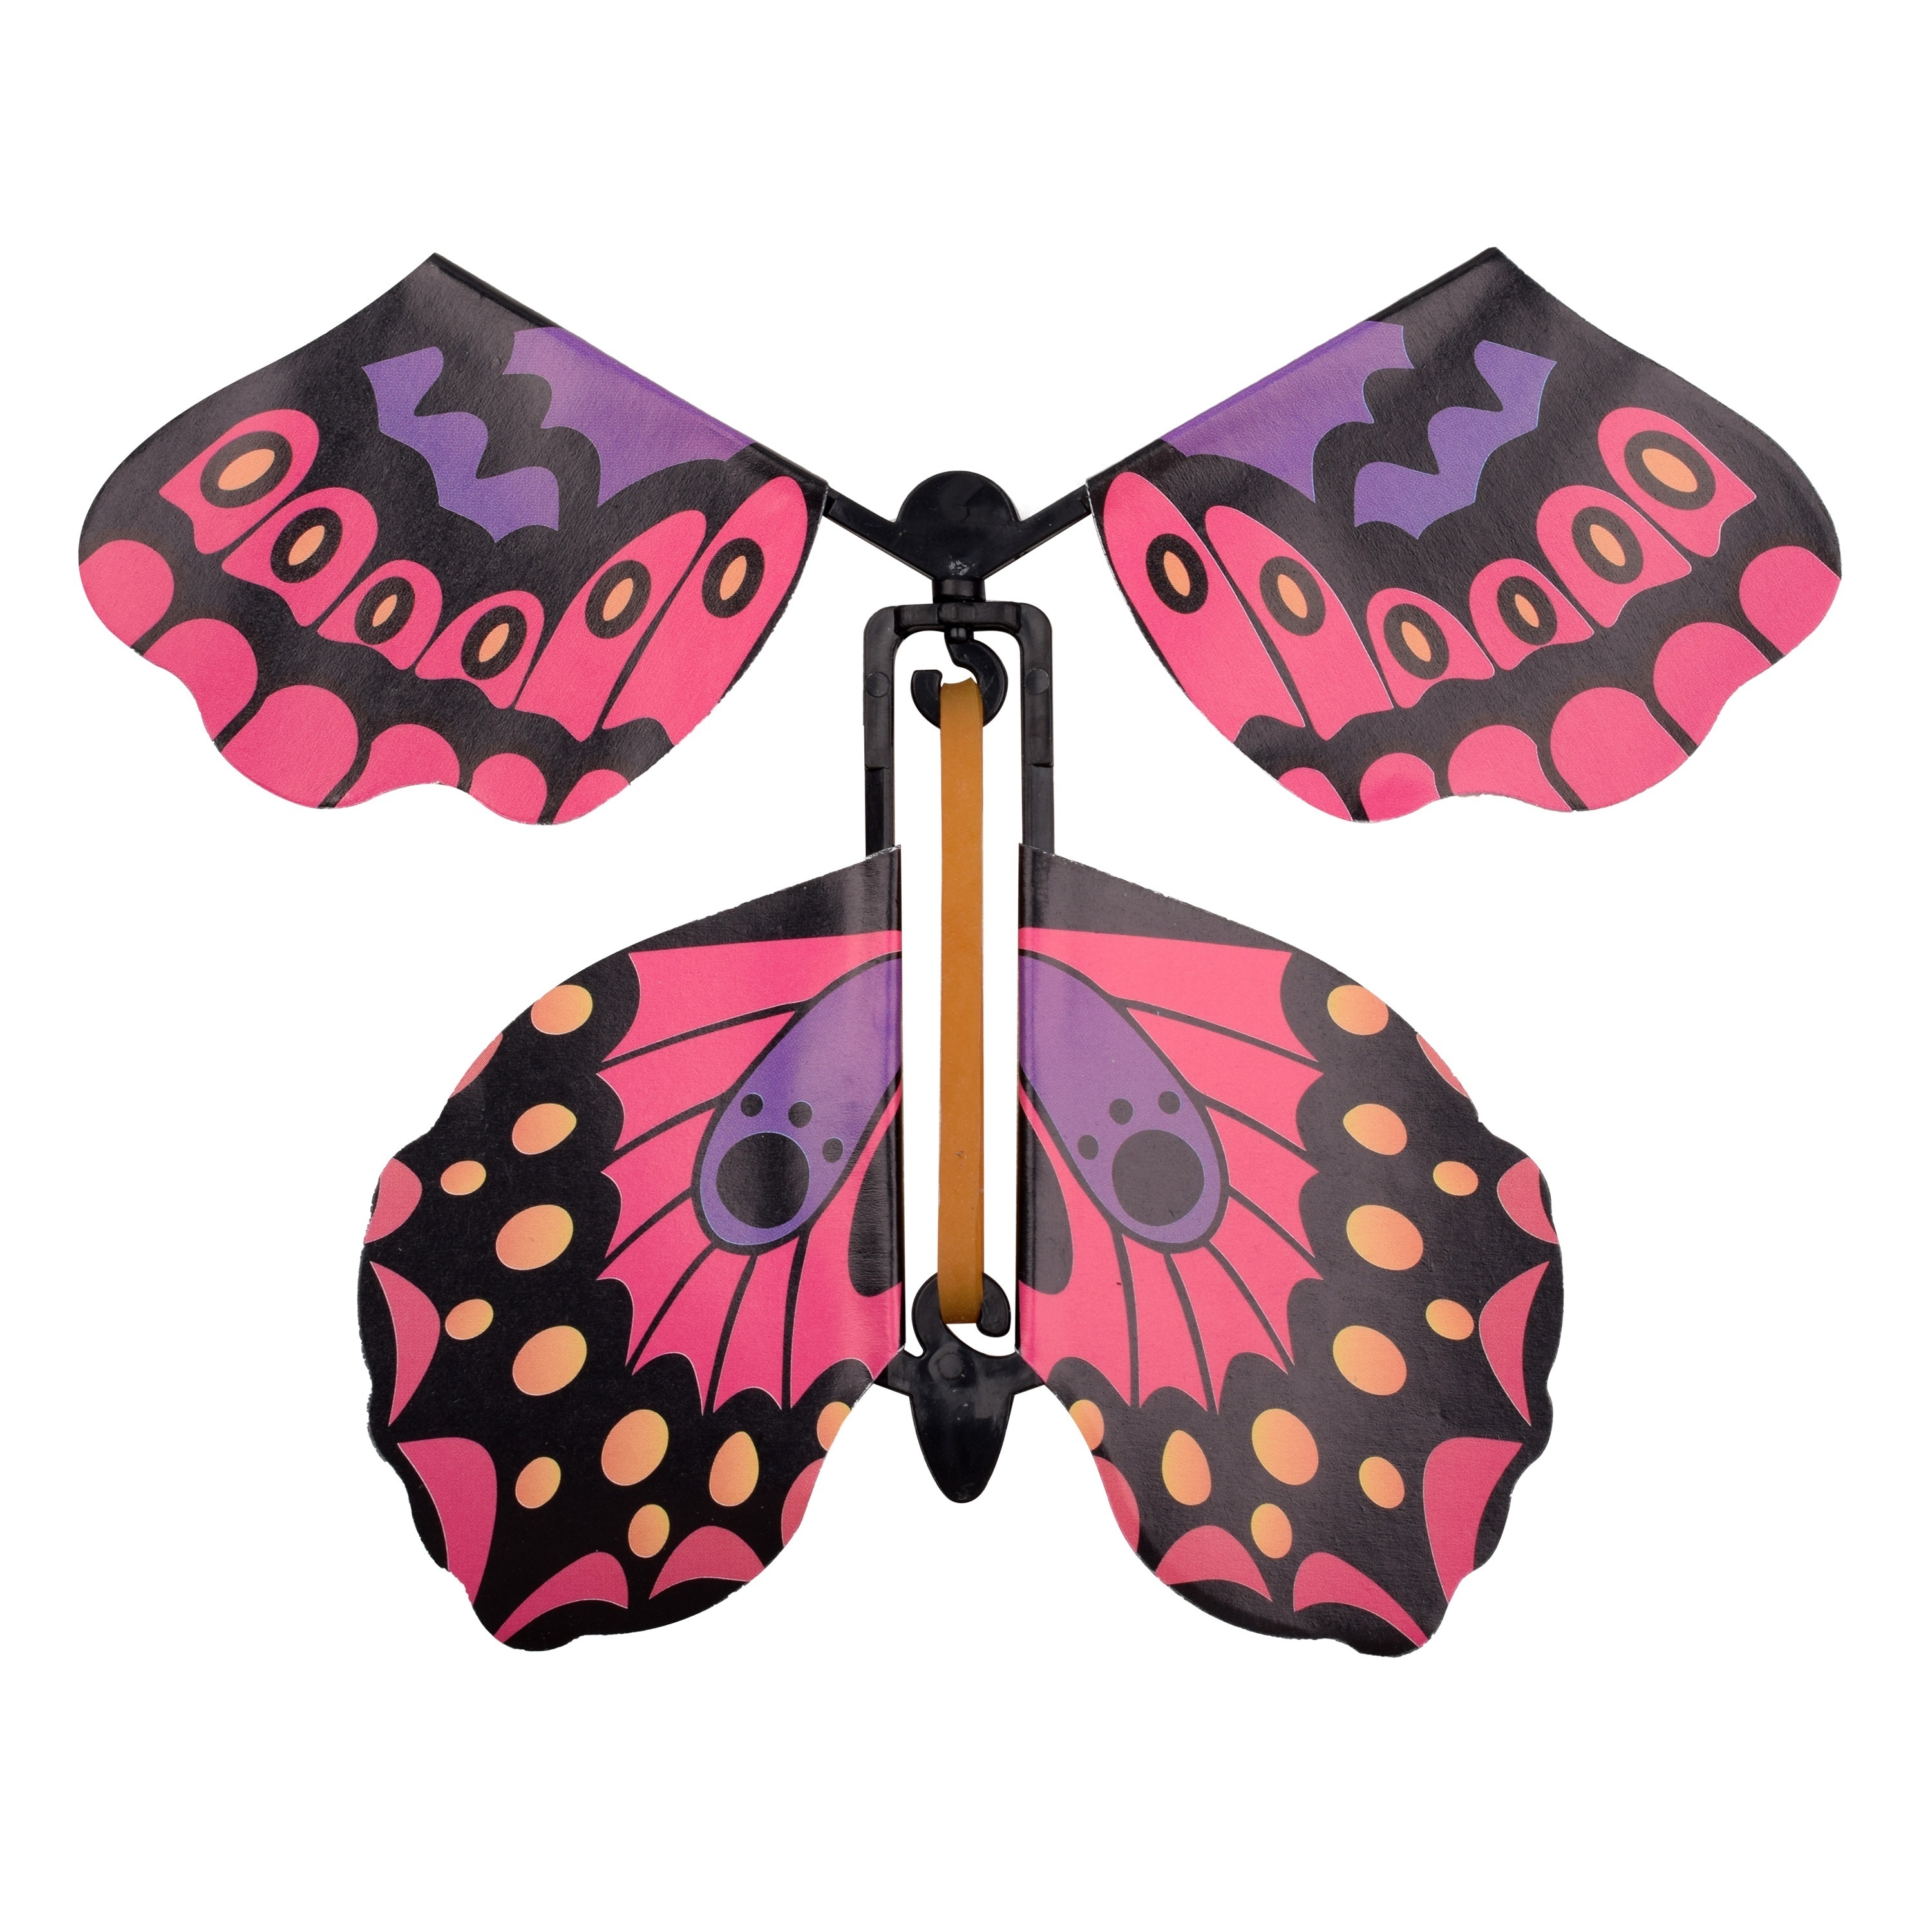 Las mariposas voladoras vuelan alto, no abren pegamento, accesorios  mágicos, juguetes para niños, 10 volando fuera del bo